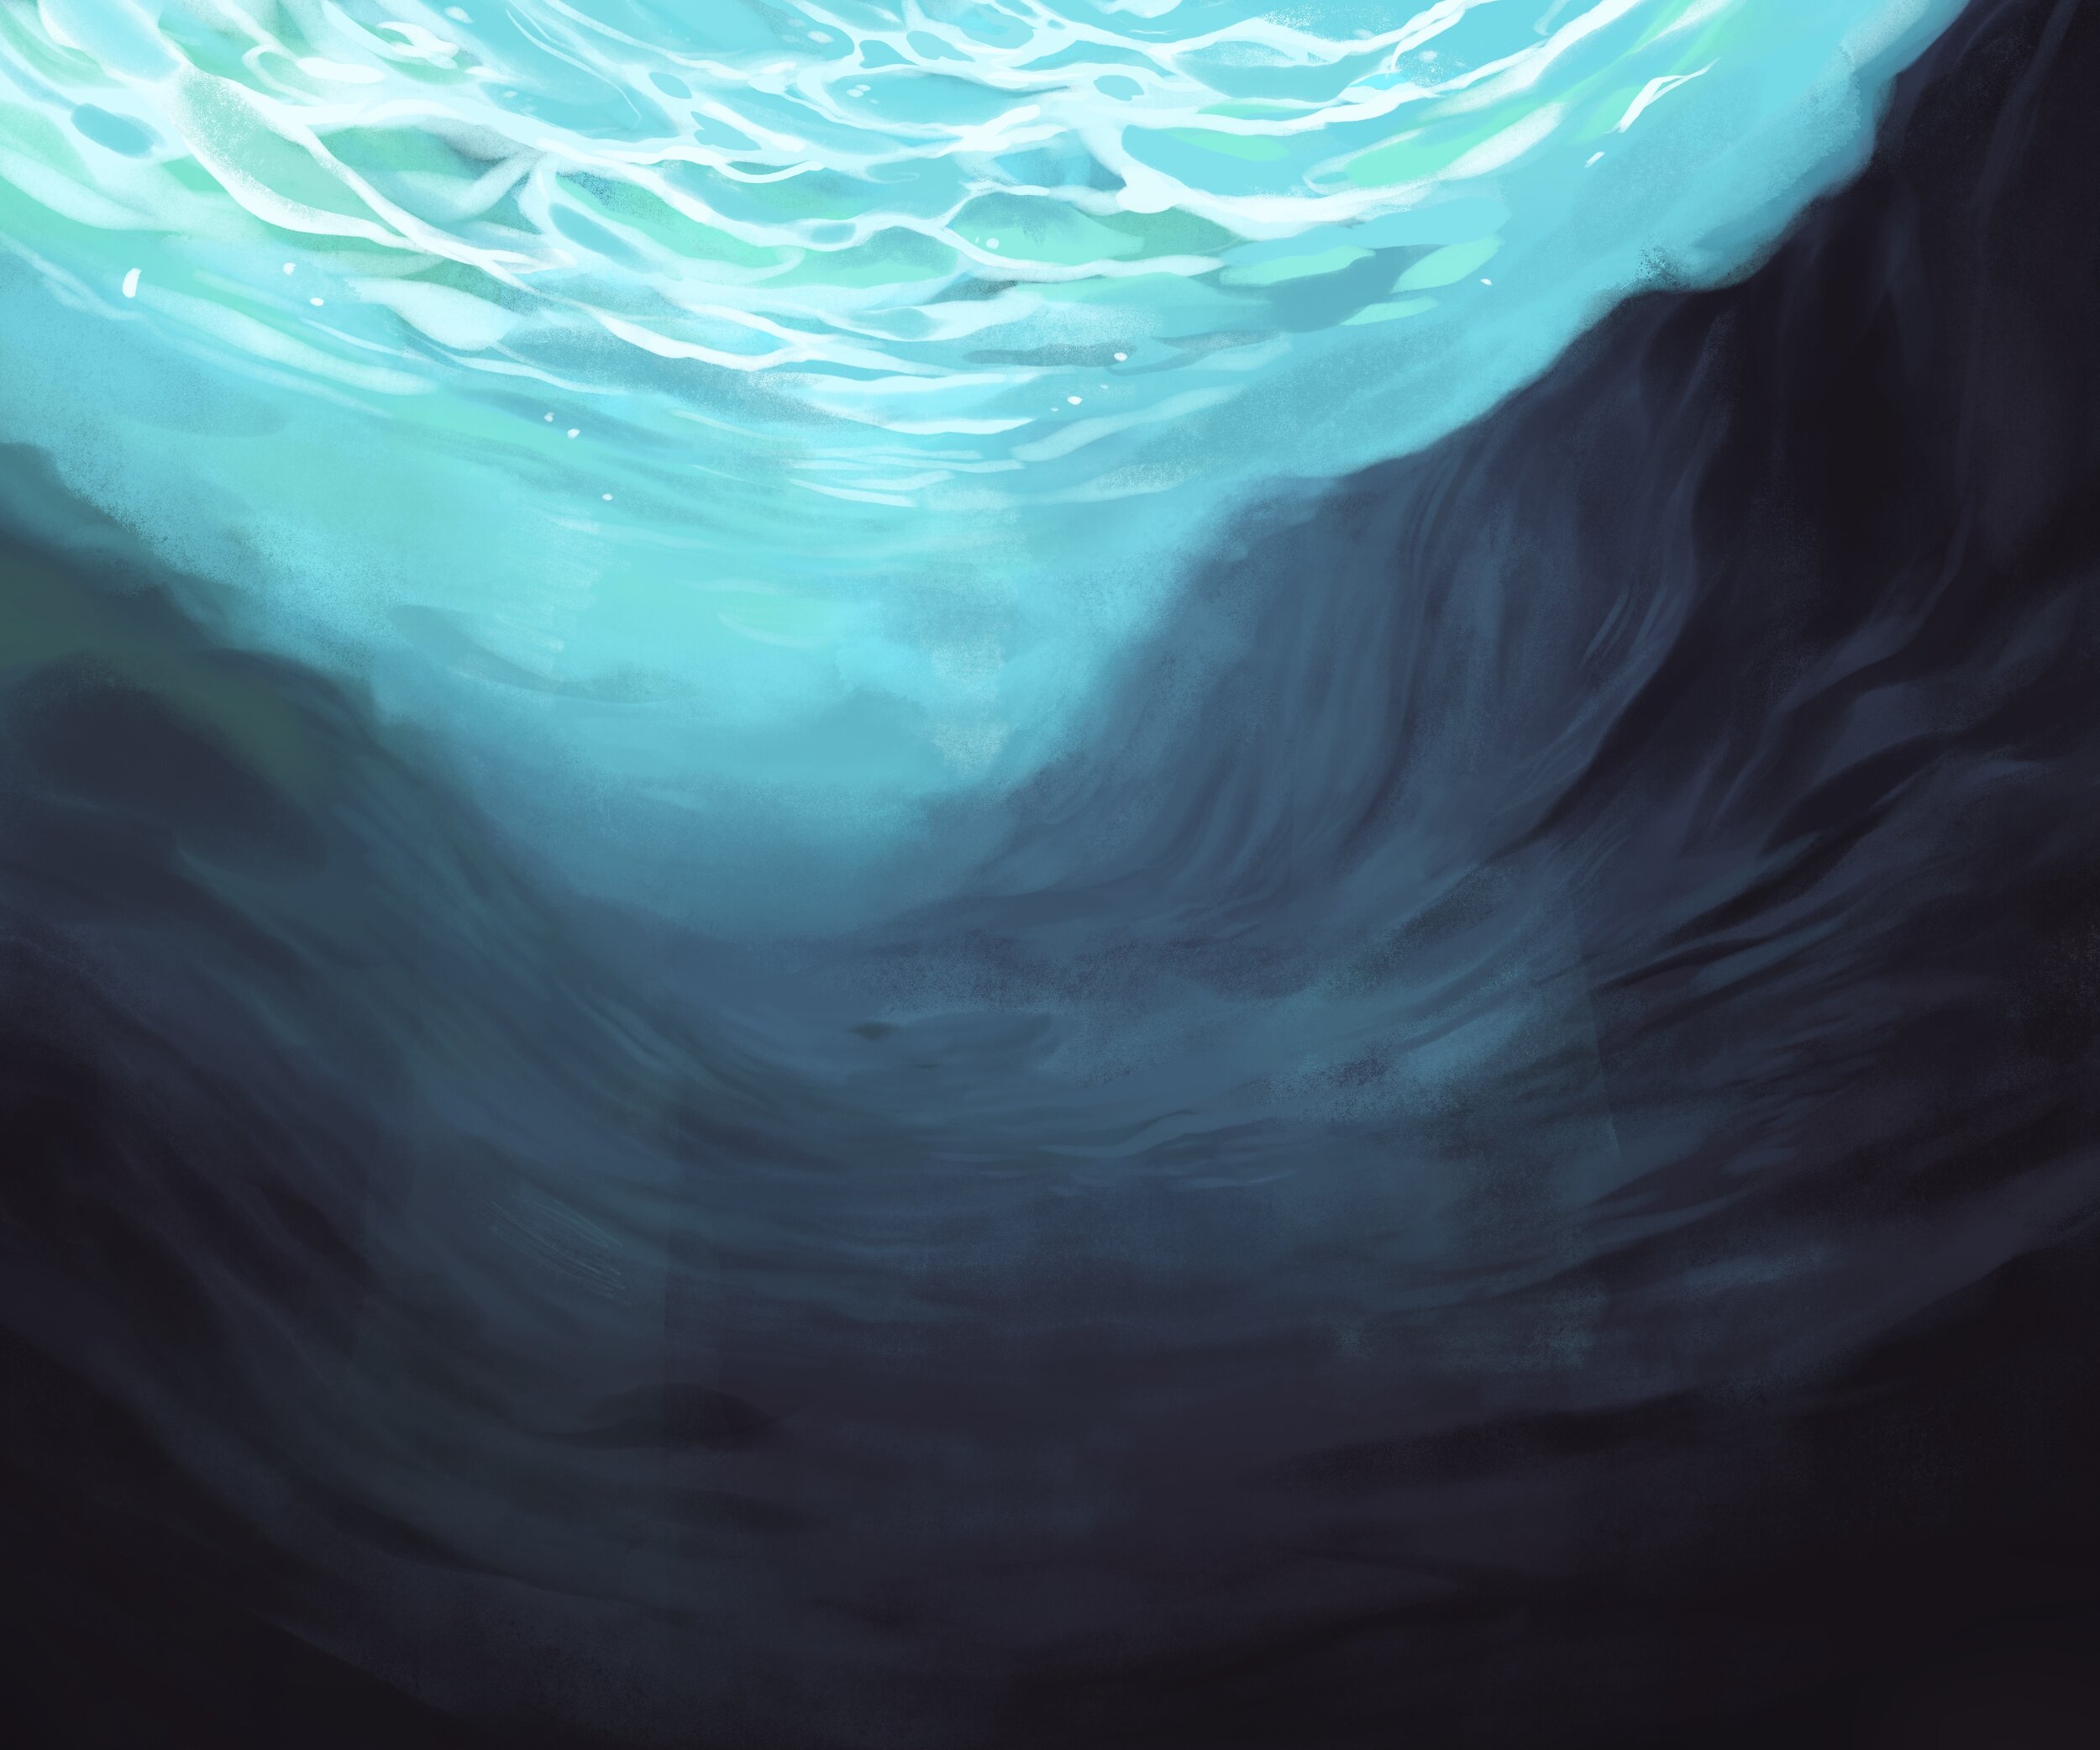 background: underwater one